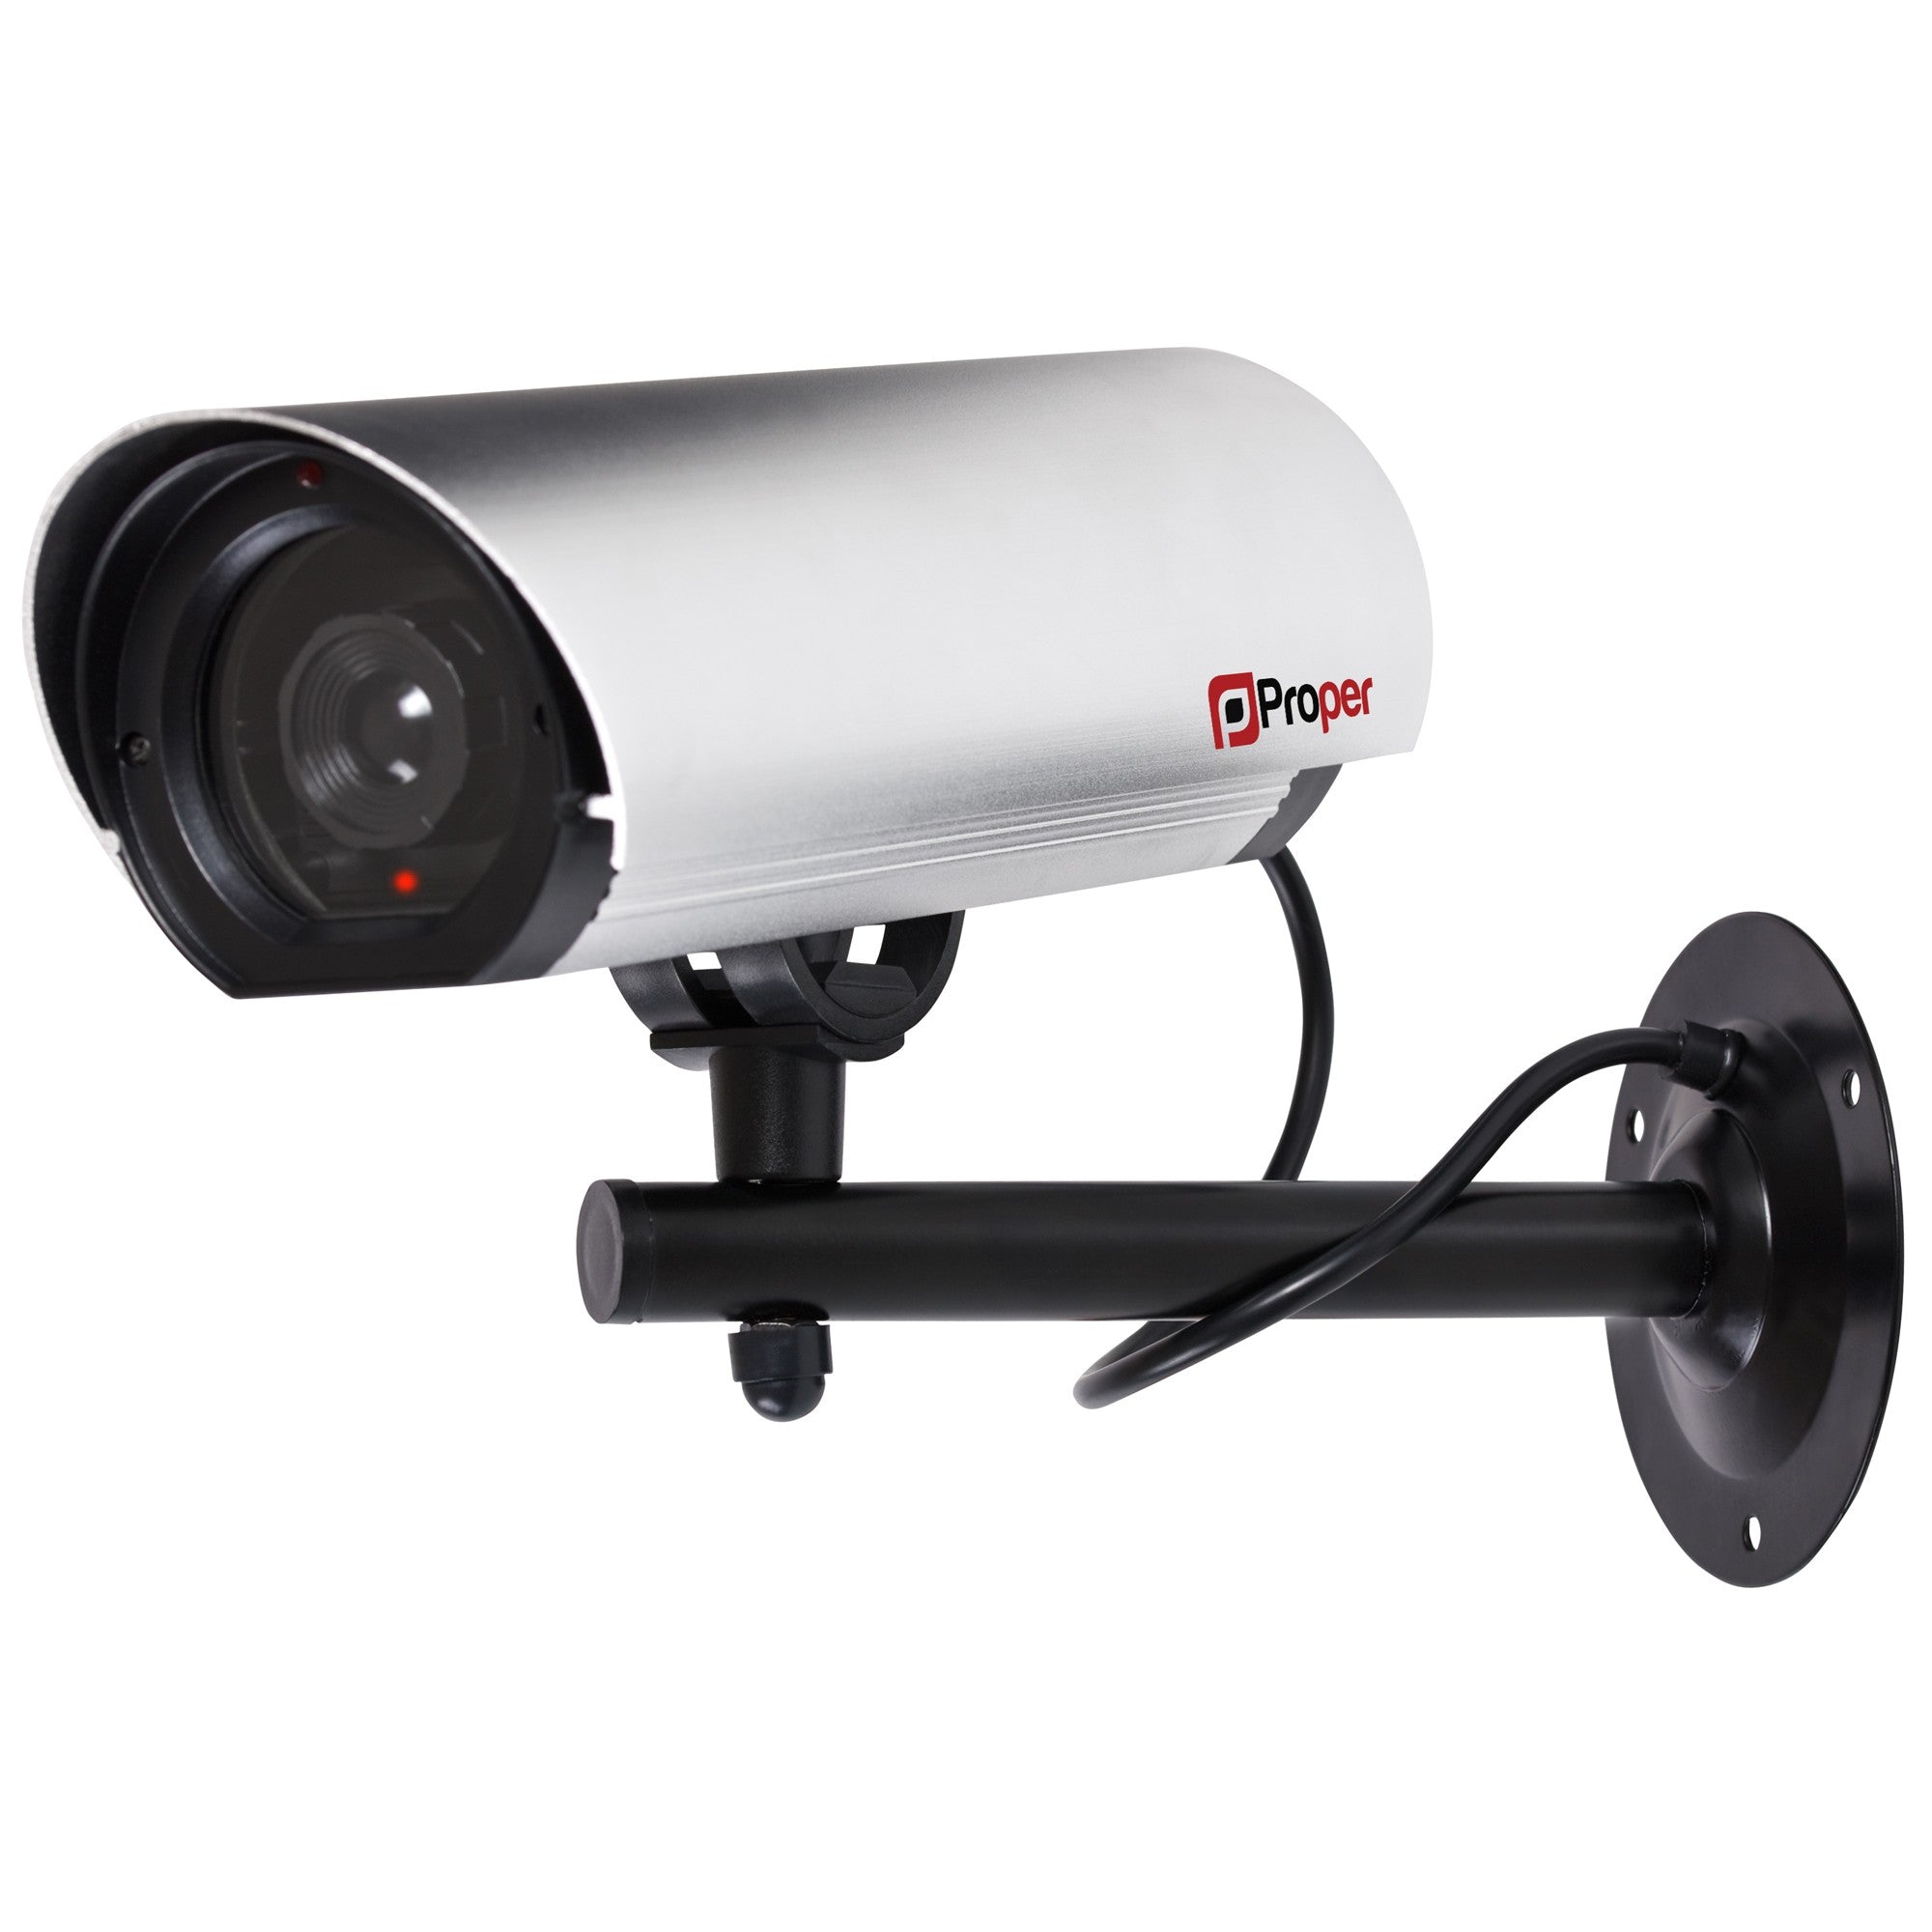 ProperAV Replica Commercial Security Camera with Aluminium 23cm Body & LED Light - Silver